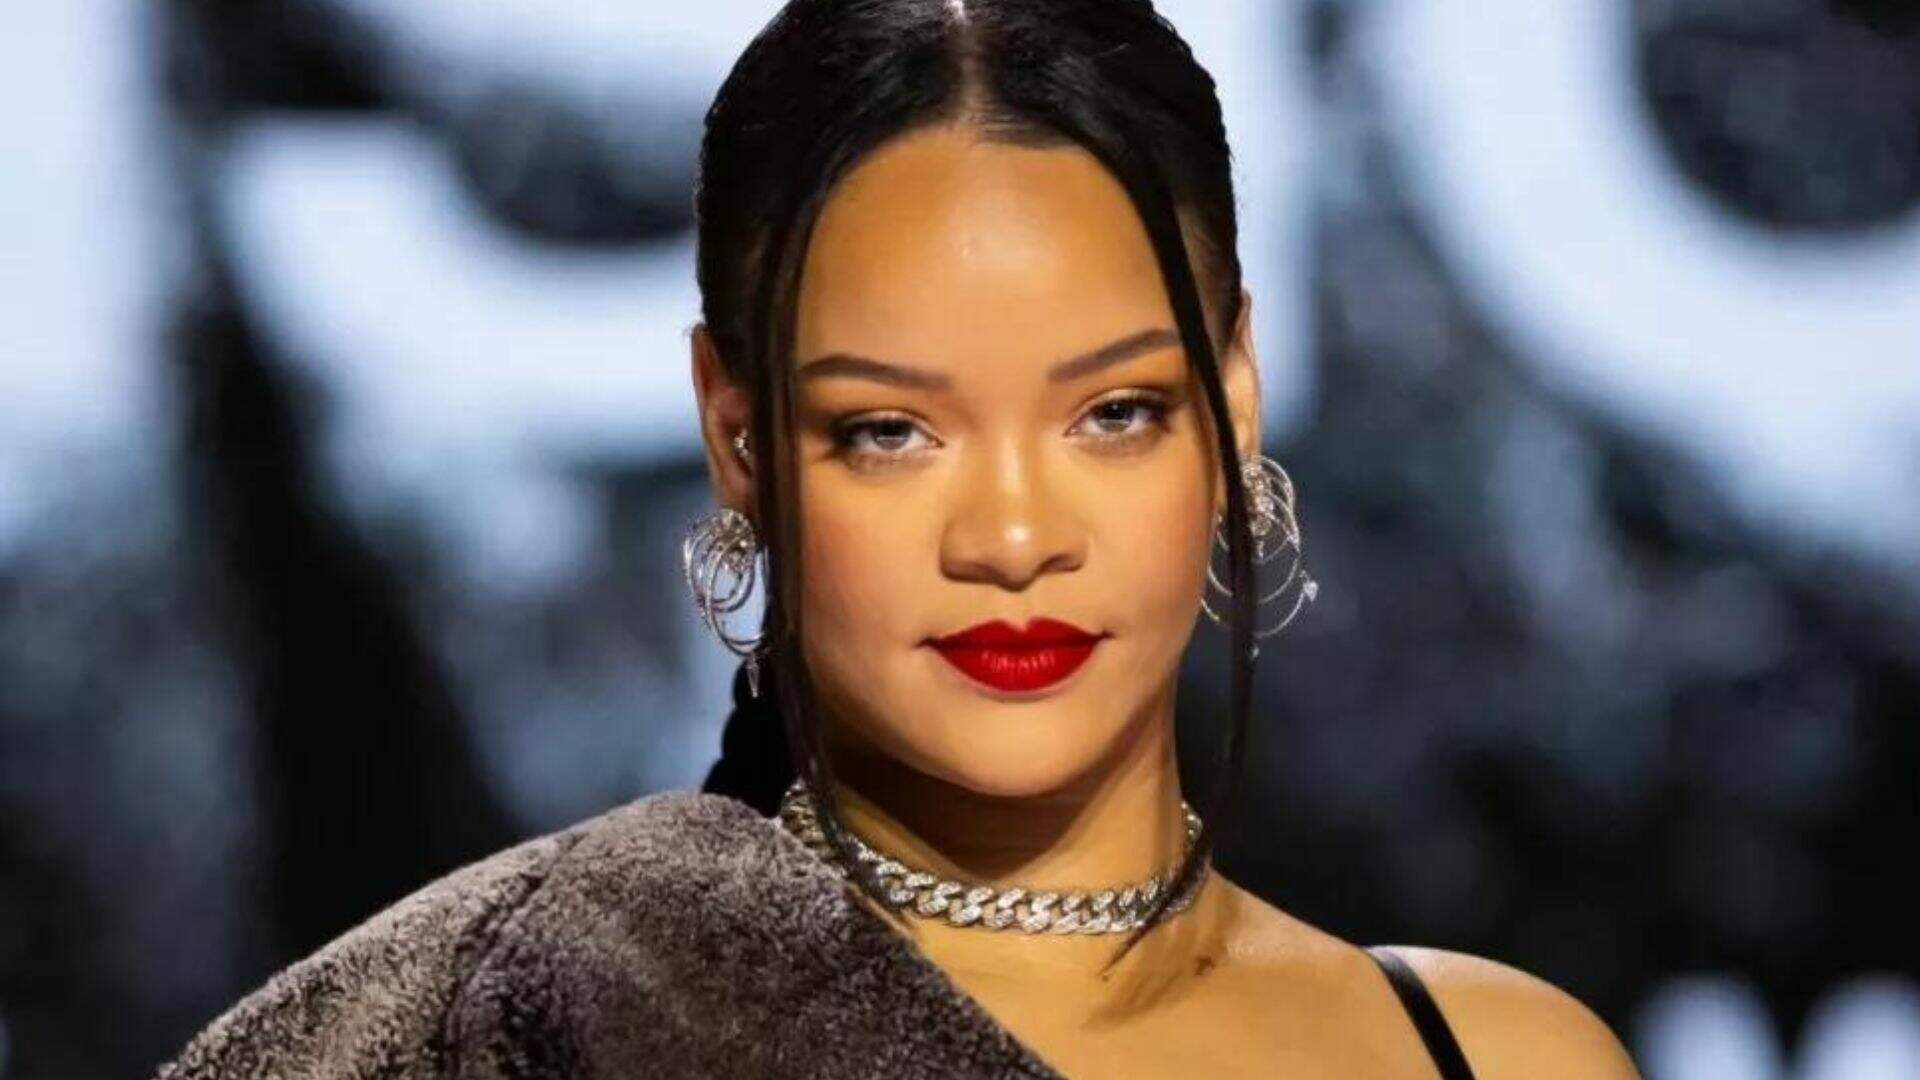 Na reta final da gravidez, Rihanna aposta em look revelador e exibe barrigão em novo flagra - Metropolitana FM